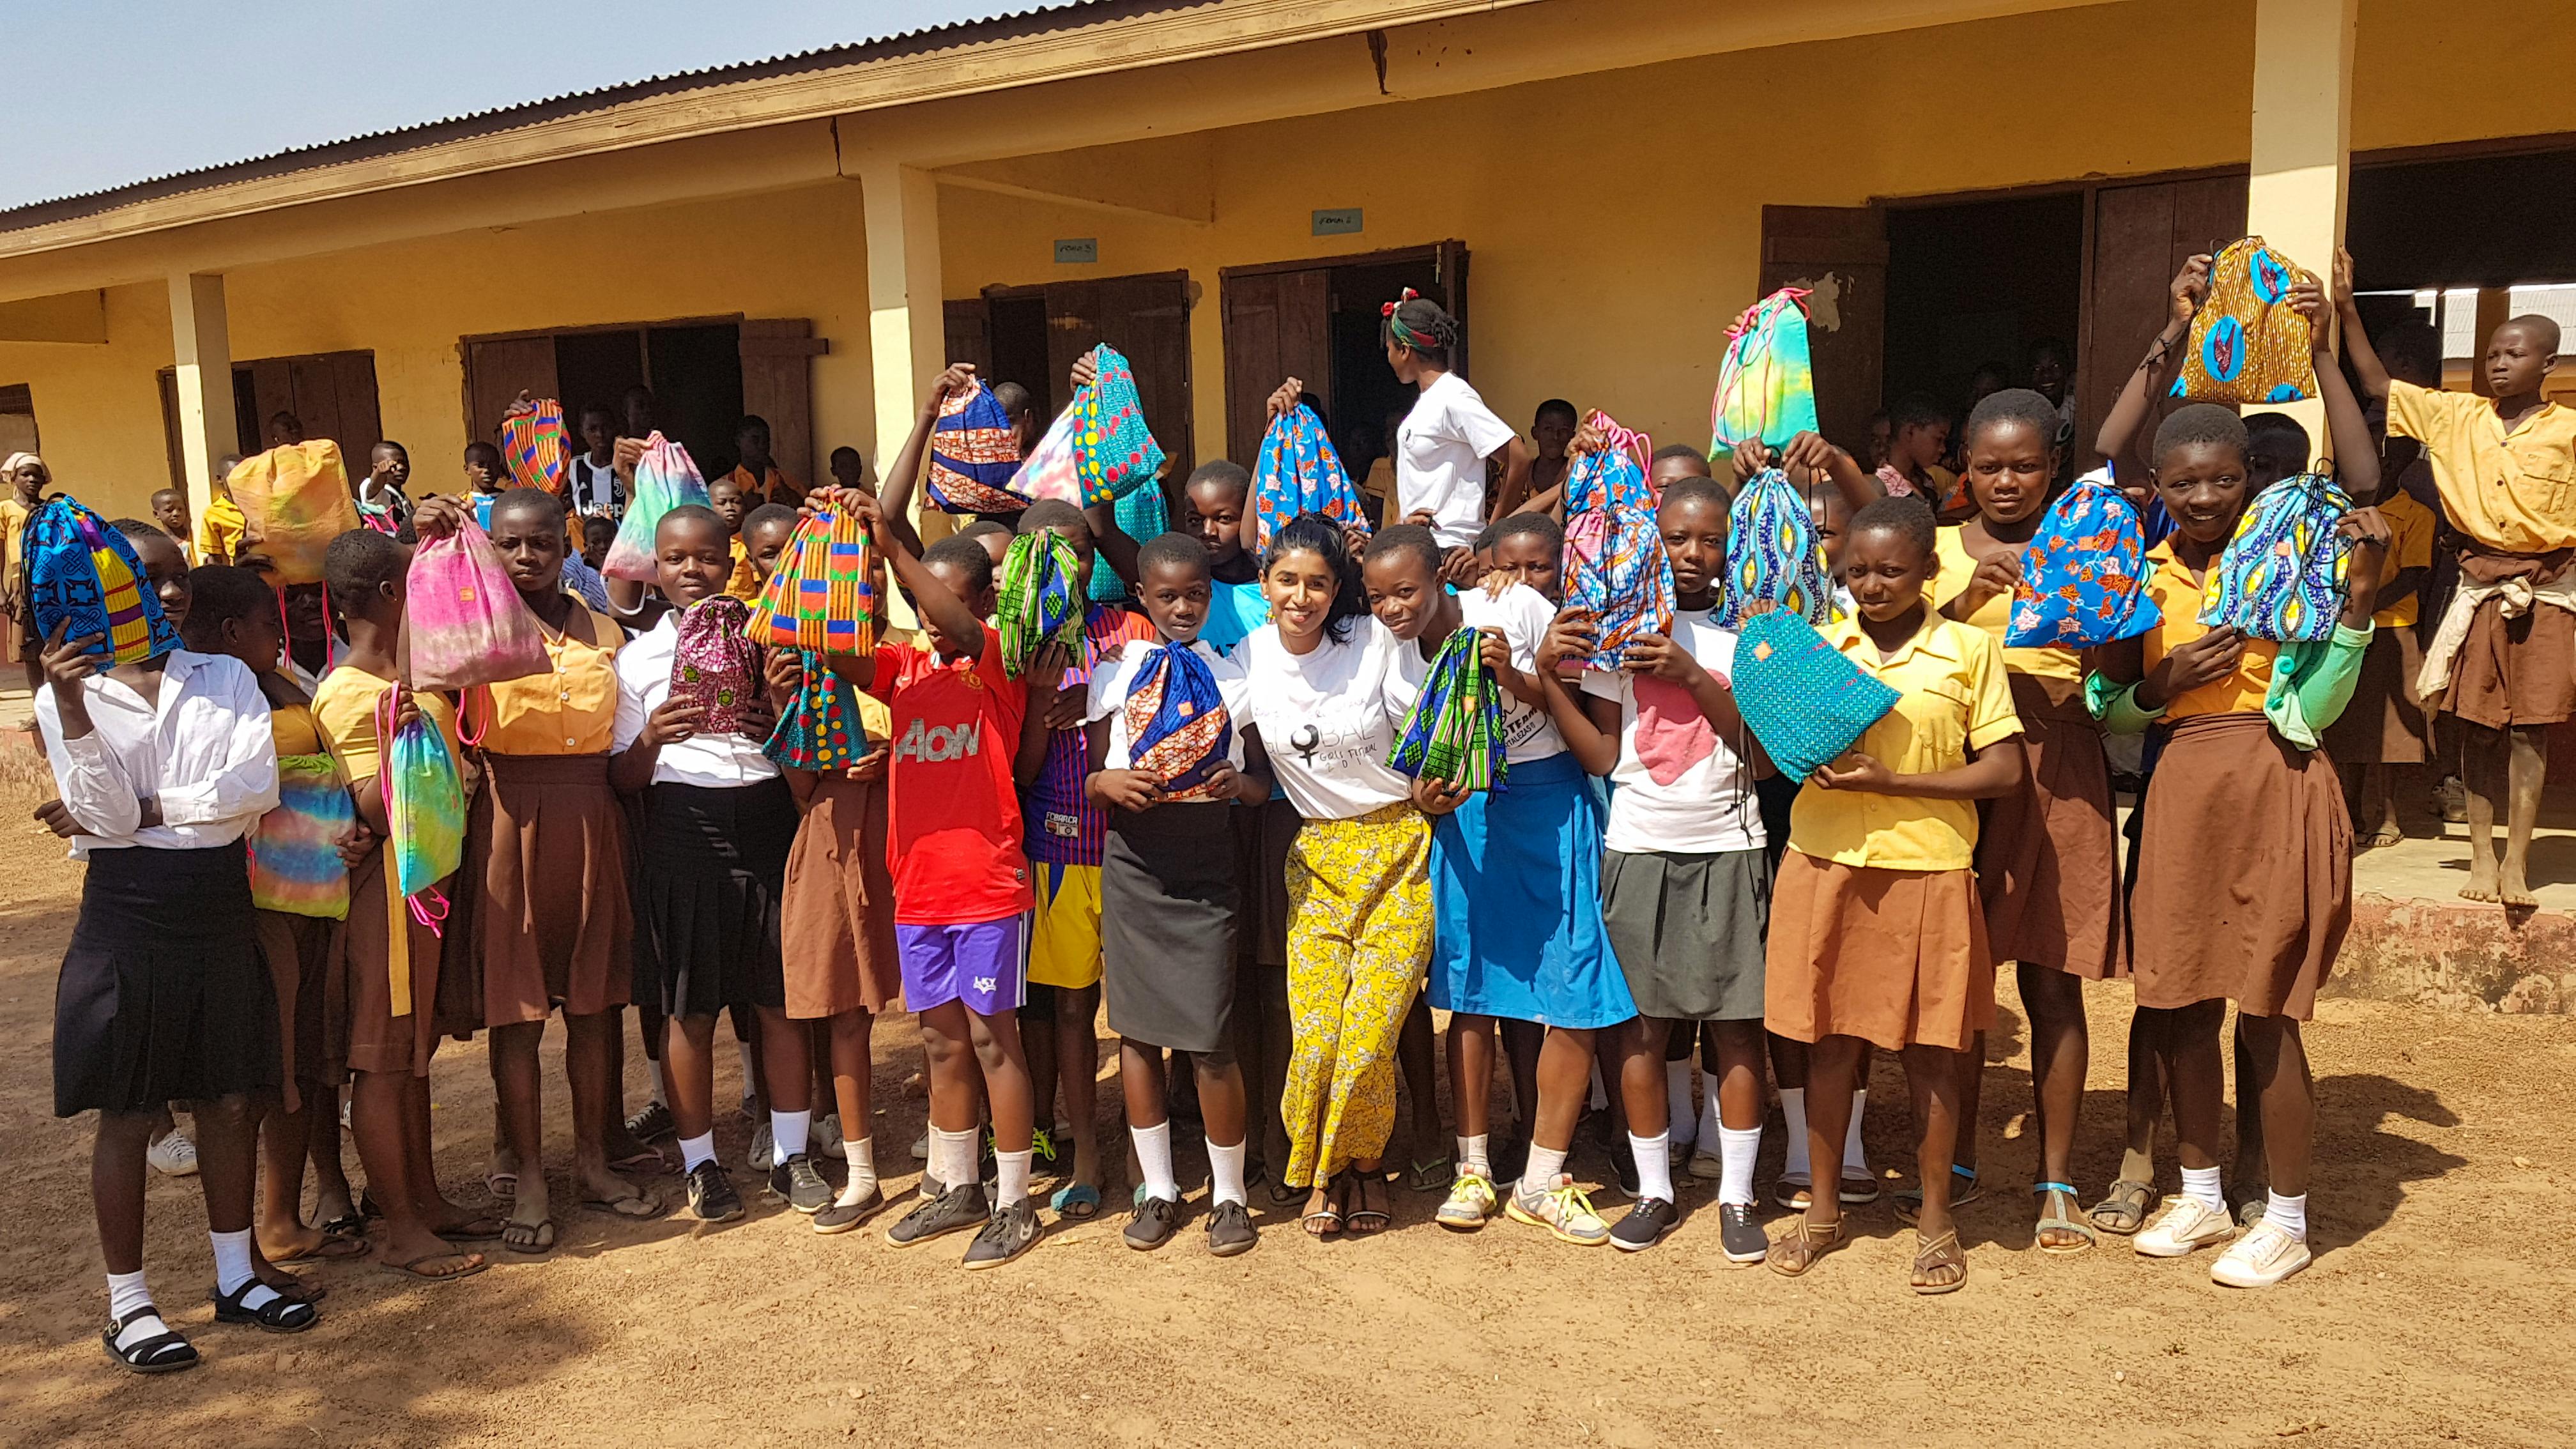 Help Project Dignity empower schoolgirl